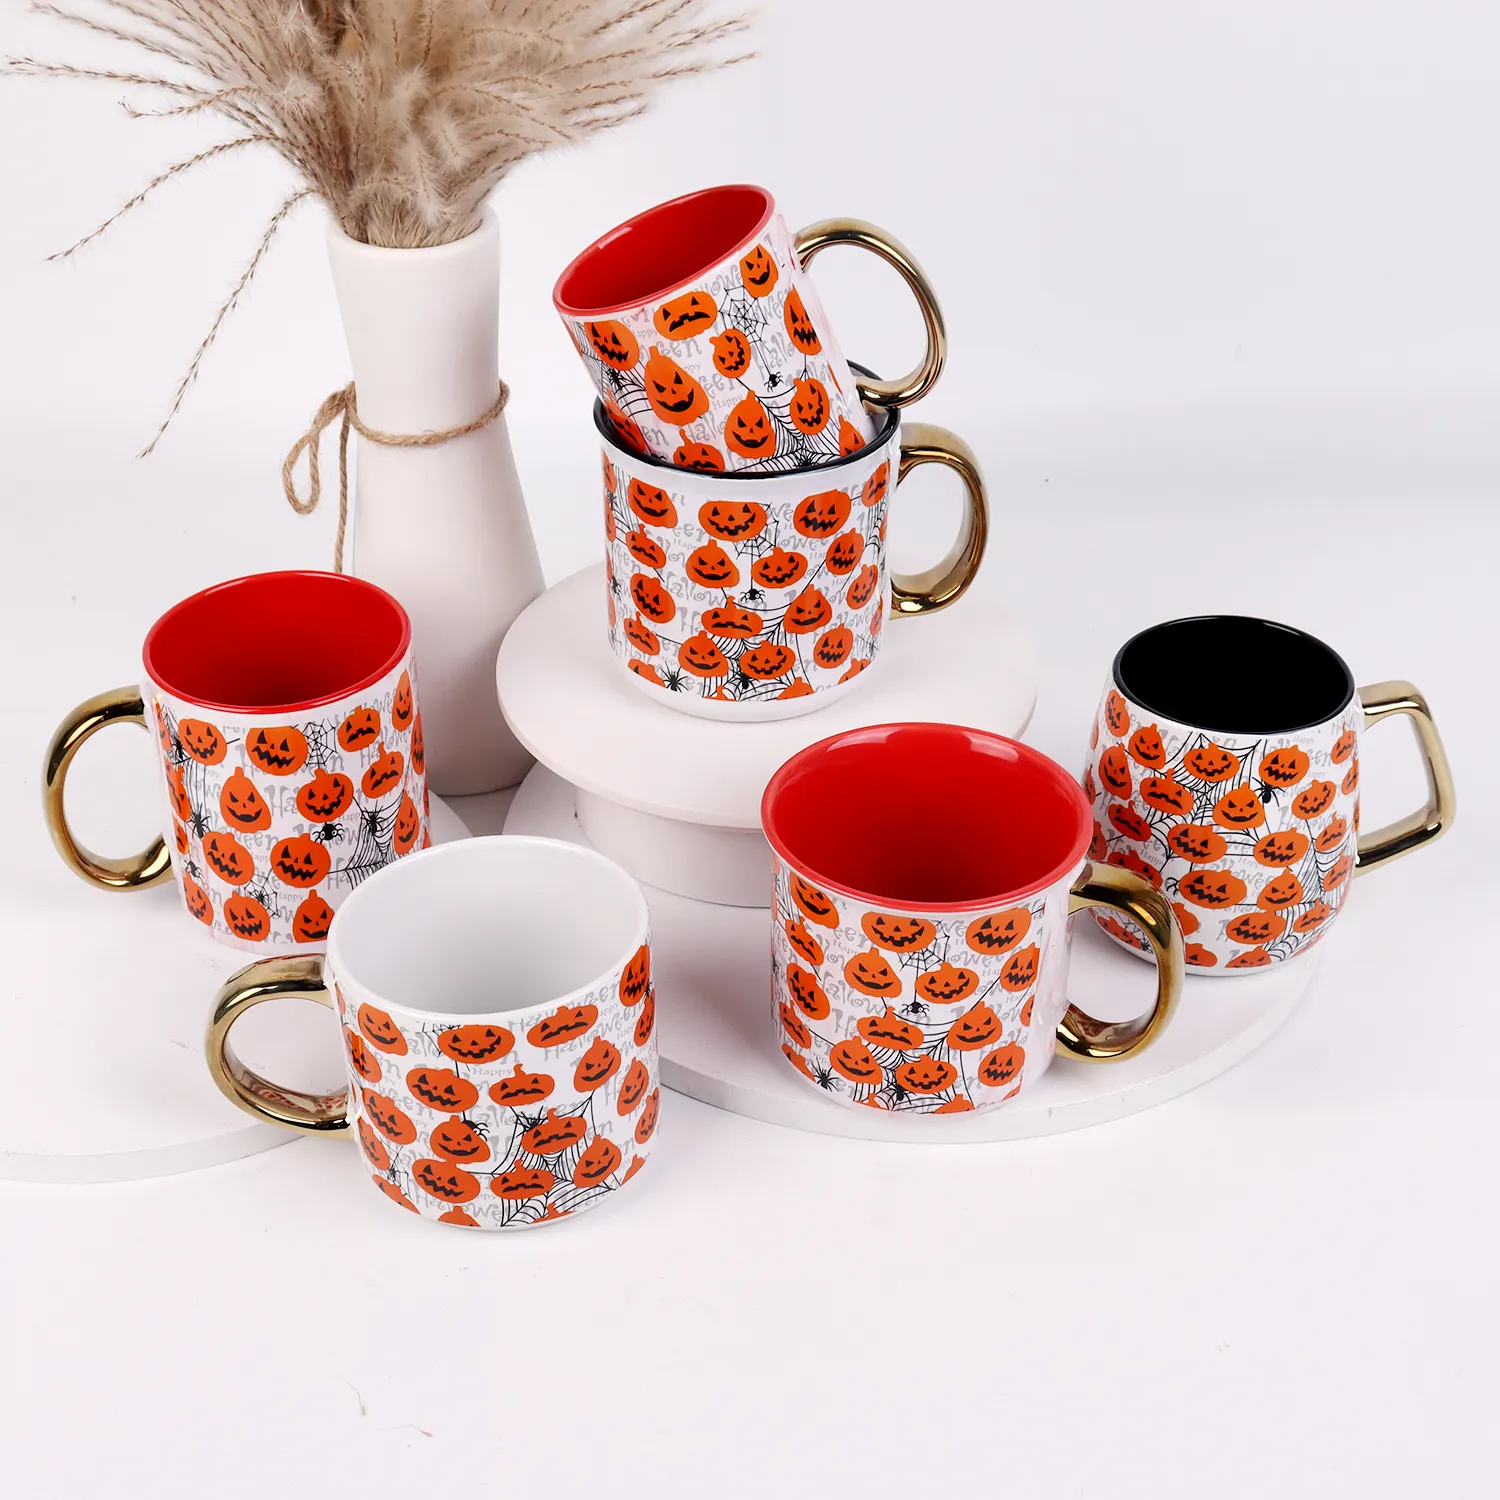 Nuovo rilascio bianco porcellana ceramica tazza da tè di Halloween sublimazione latte tazza da caffè nuovo personalizzare tazze di sublimazione